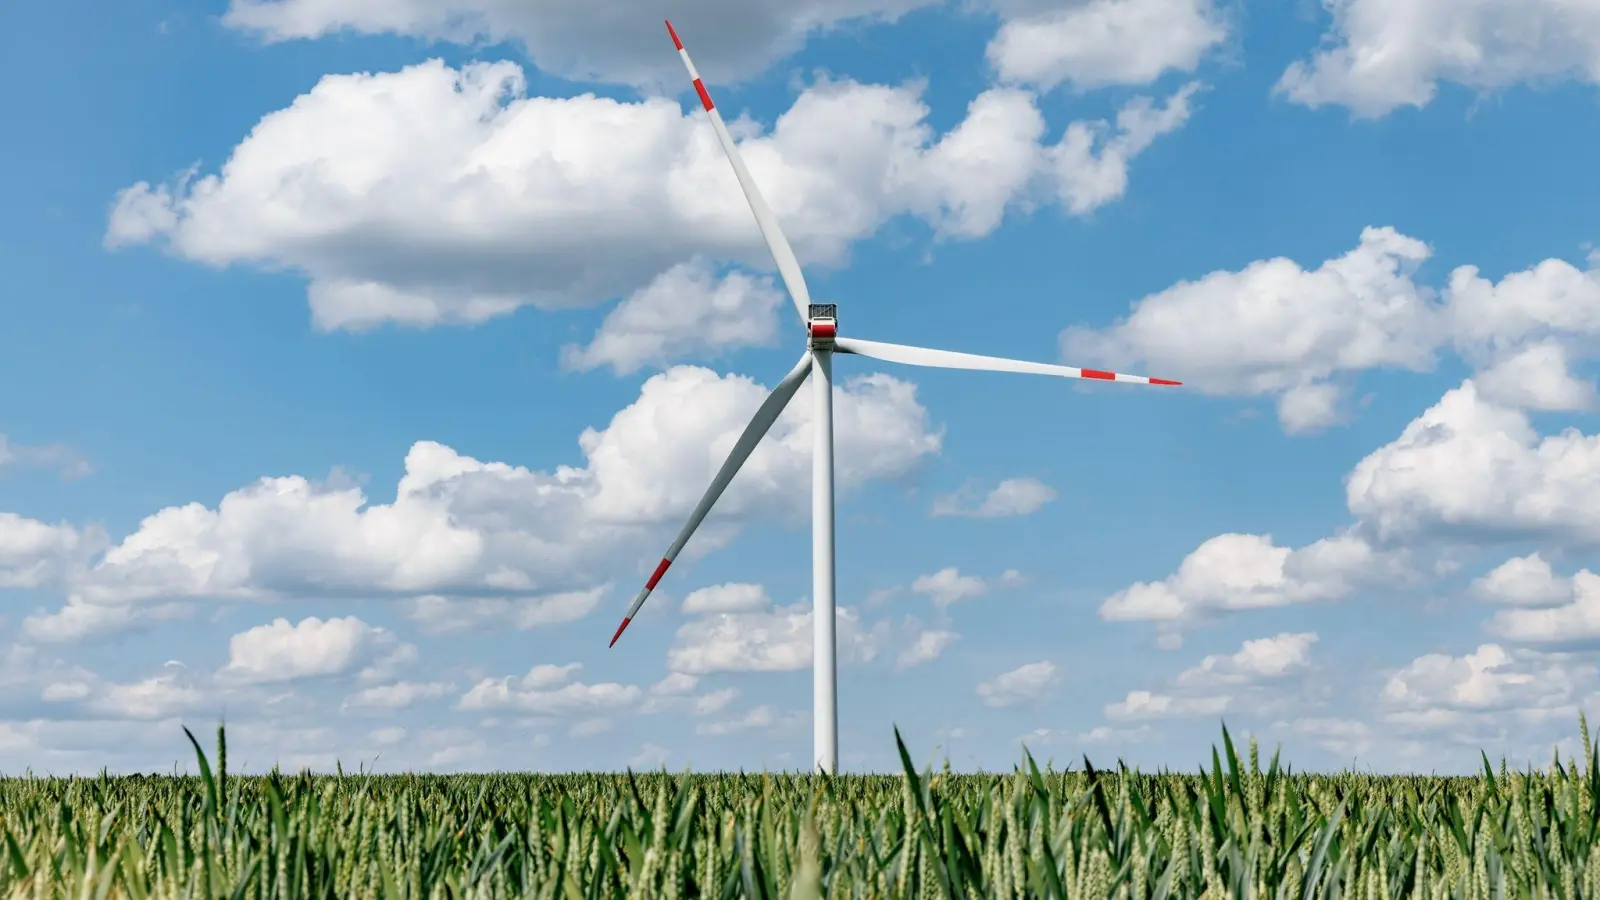 Die Bundesnetzagentur hat sich für eine Strompreisreform mit niedrigeren Gebühren für Regionen mit viel Windkraft ausgesprochen. (Foto: Markus Scholz/dpa)